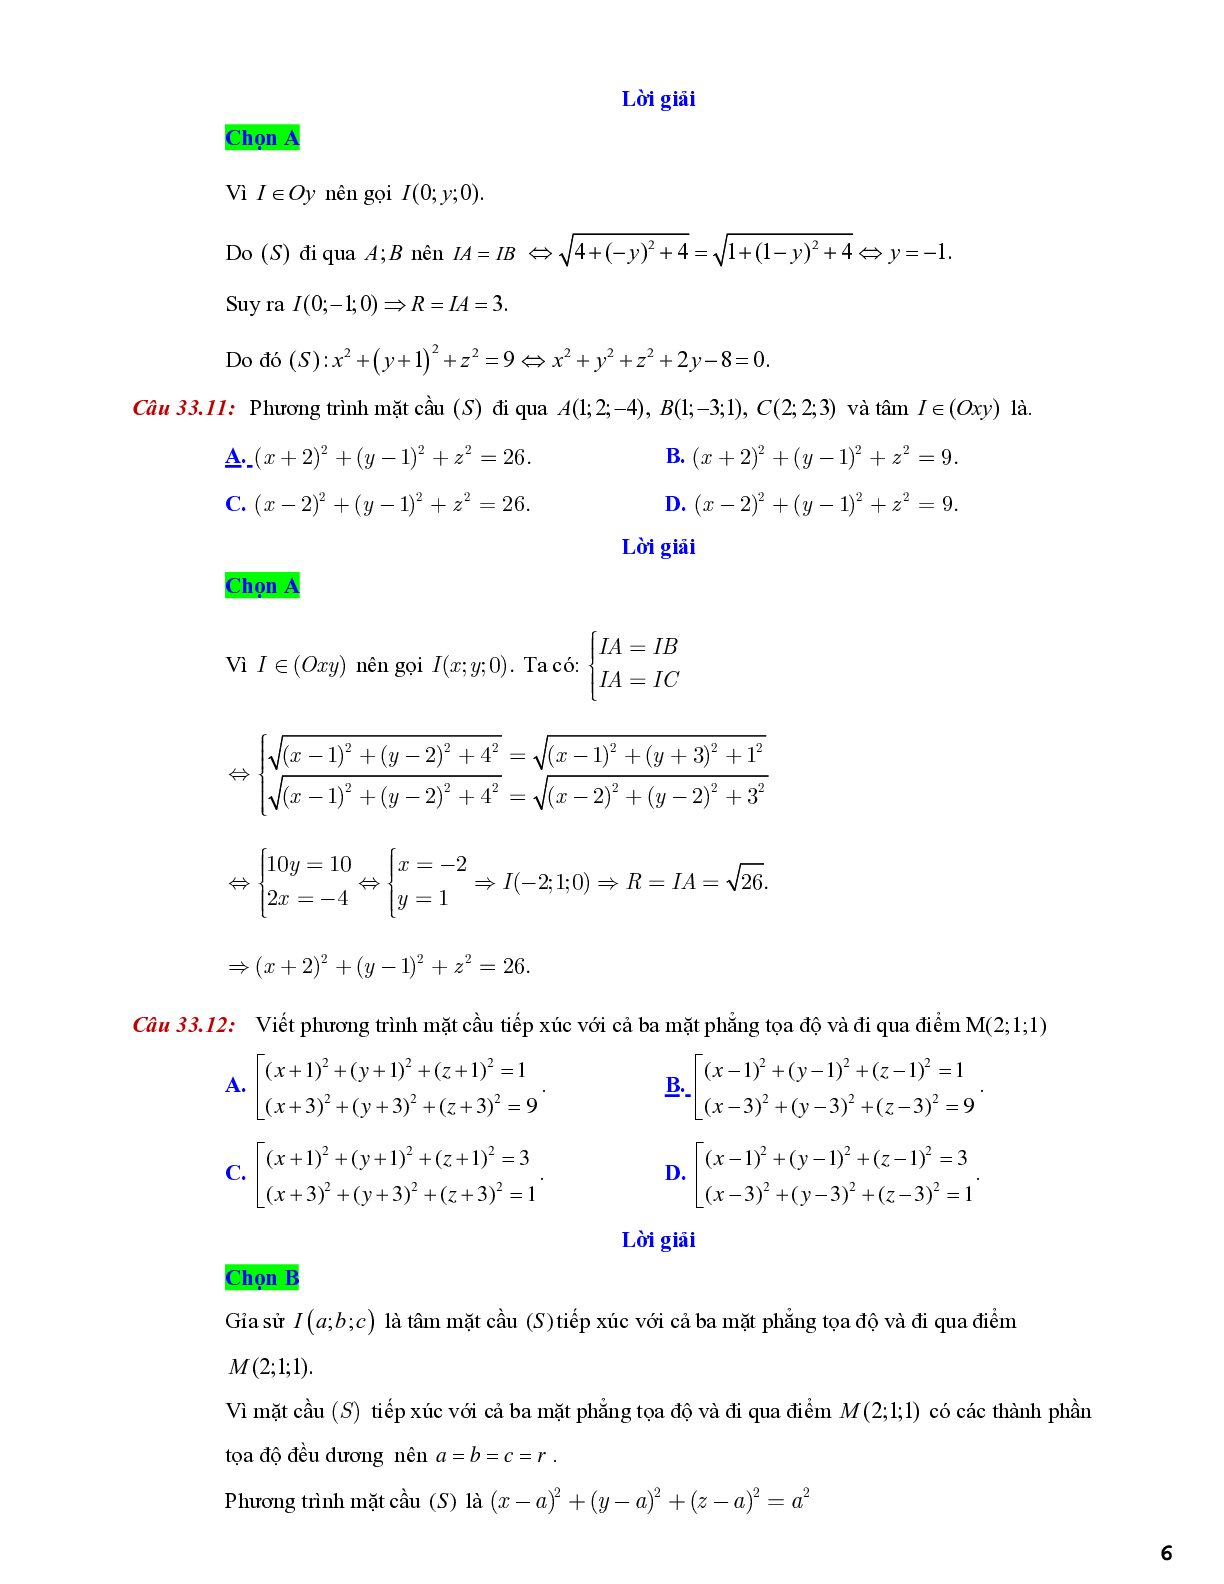 Lý thuyết và bài tập về viết phương trình mặt cầu - có đáp án chi tiết (trang 6)